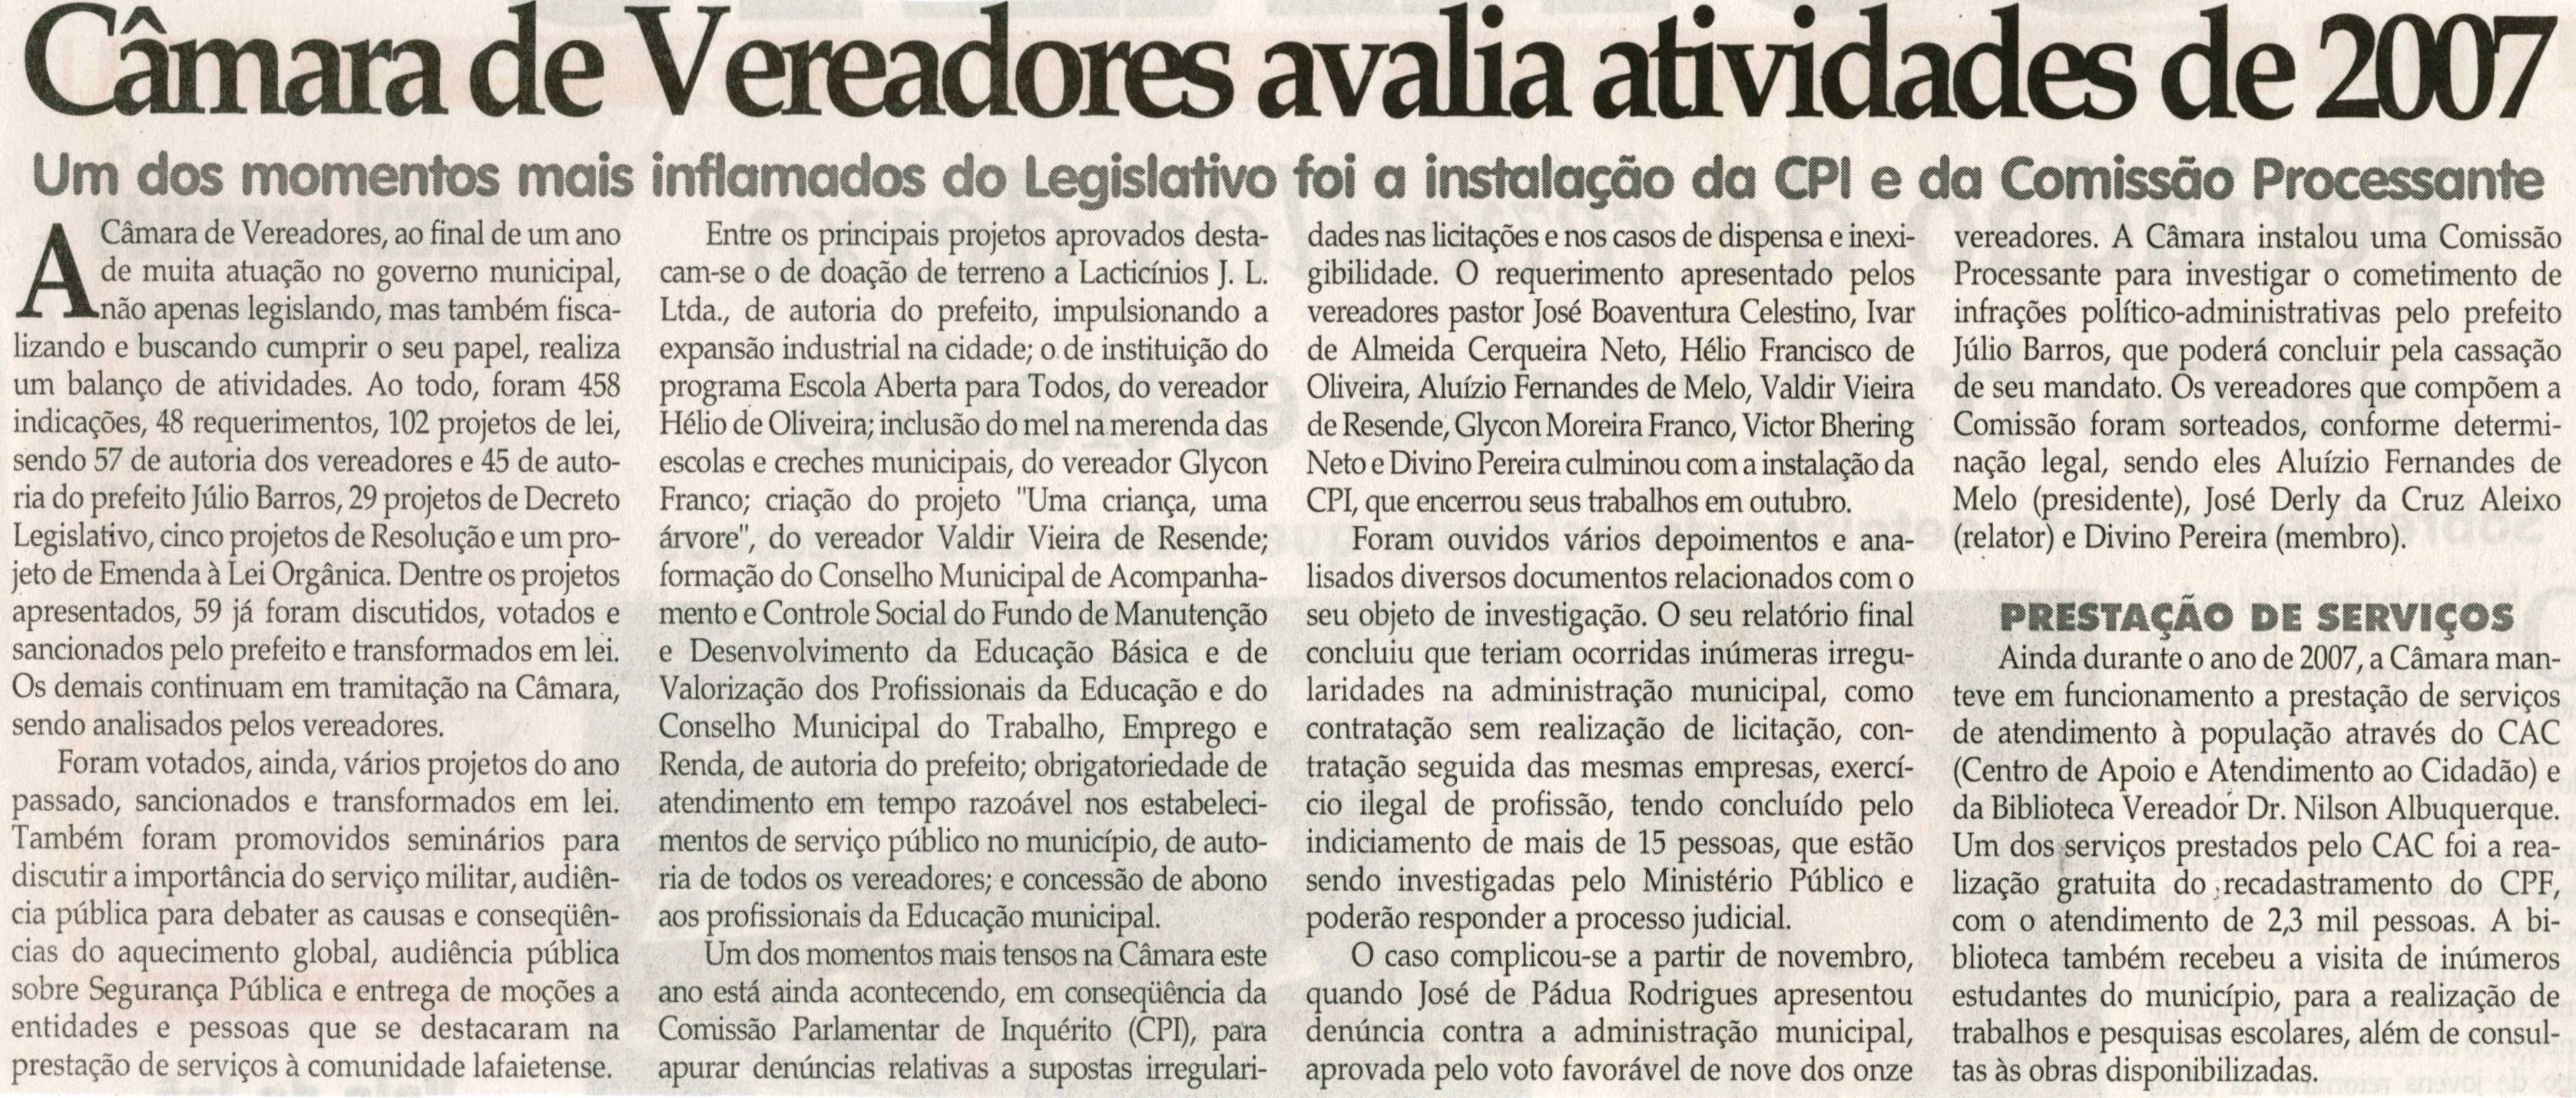 Câmara de Vereadores avalia atividades de 2007. Jornal Correio da Cidade, Conselheiro Lafaiete, 05 jan. 2008, p. 02.